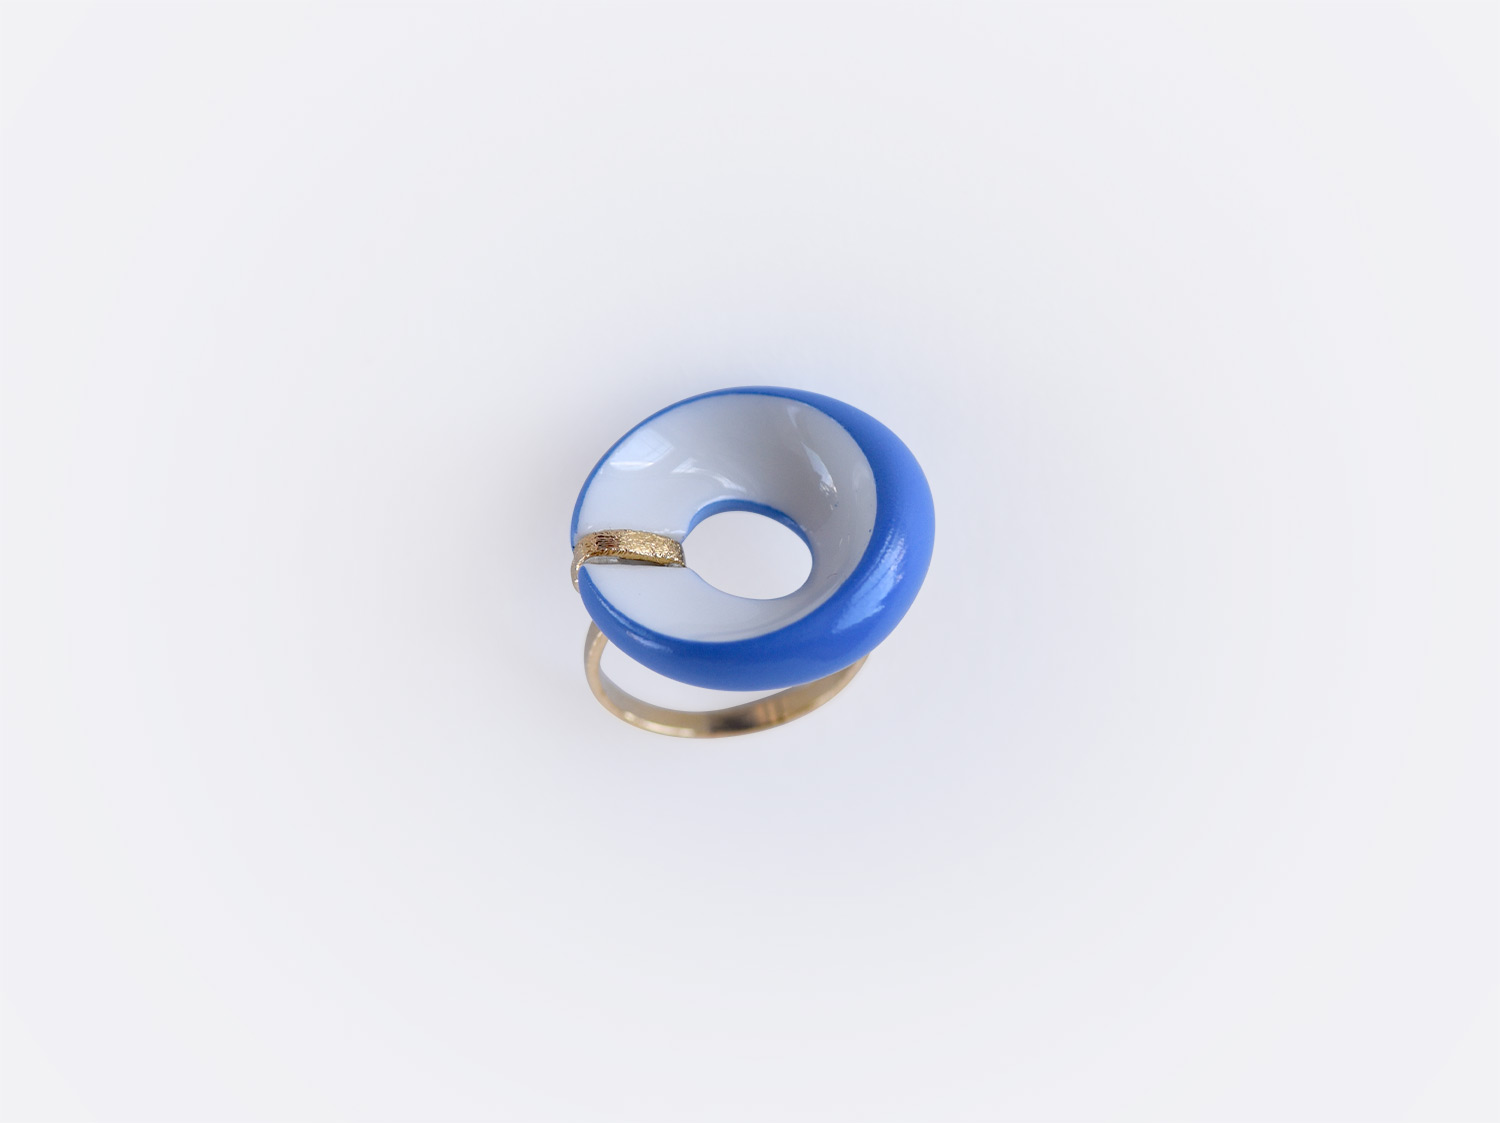 China Alba bleu flat ring of the collection ALBA BLEU | Bernardaud